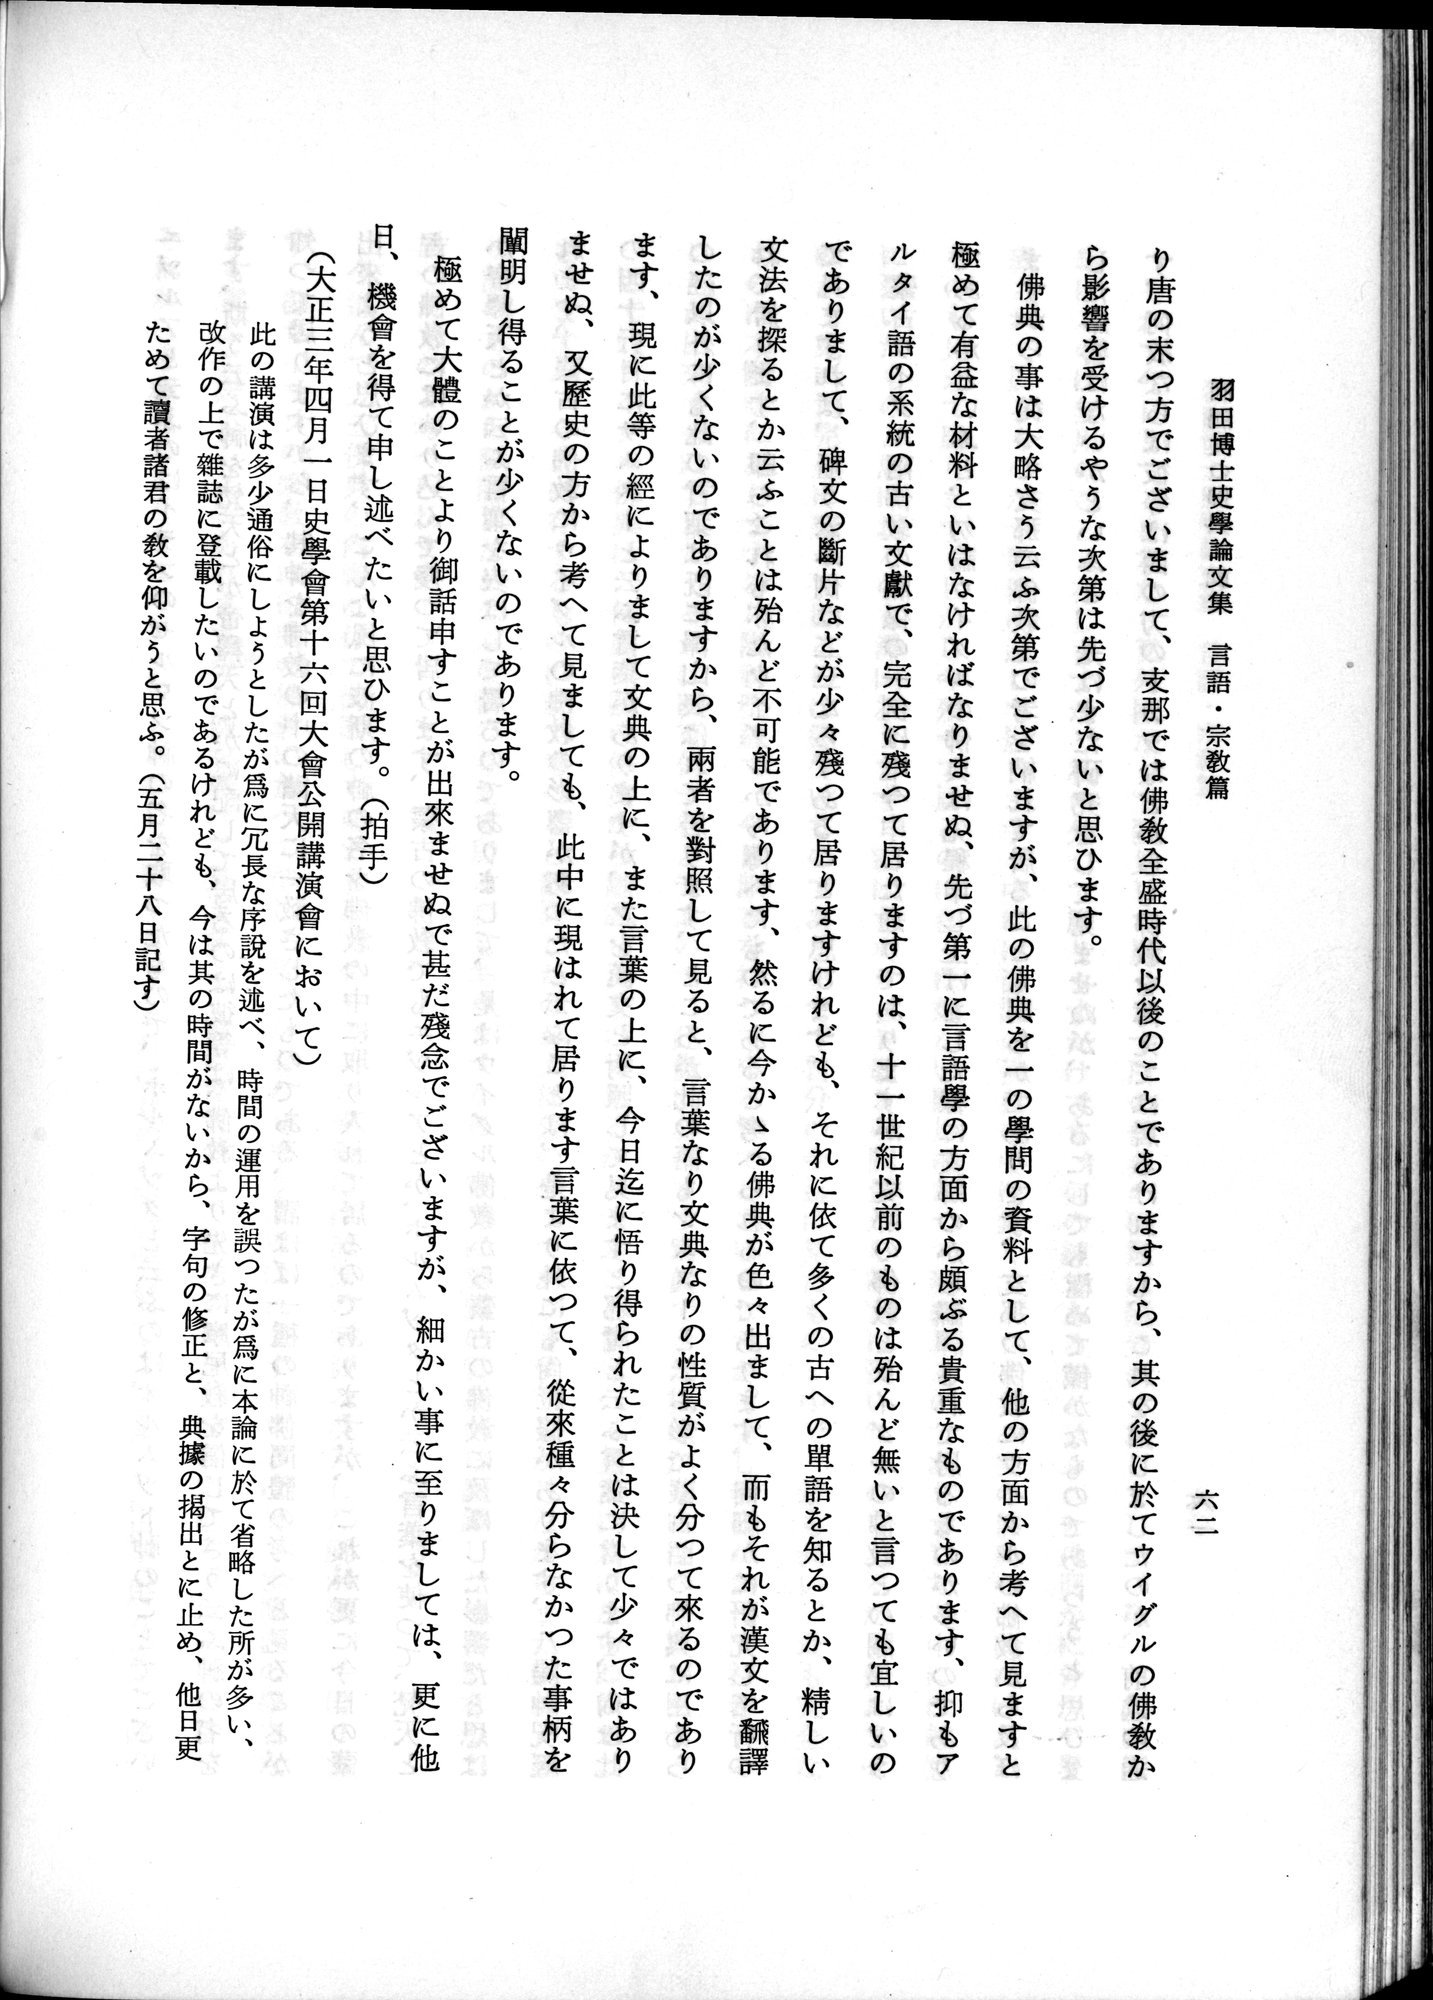 羽田博士史学論文集 : vol.2 / Page 112 (Grayscale High Resolution Image)